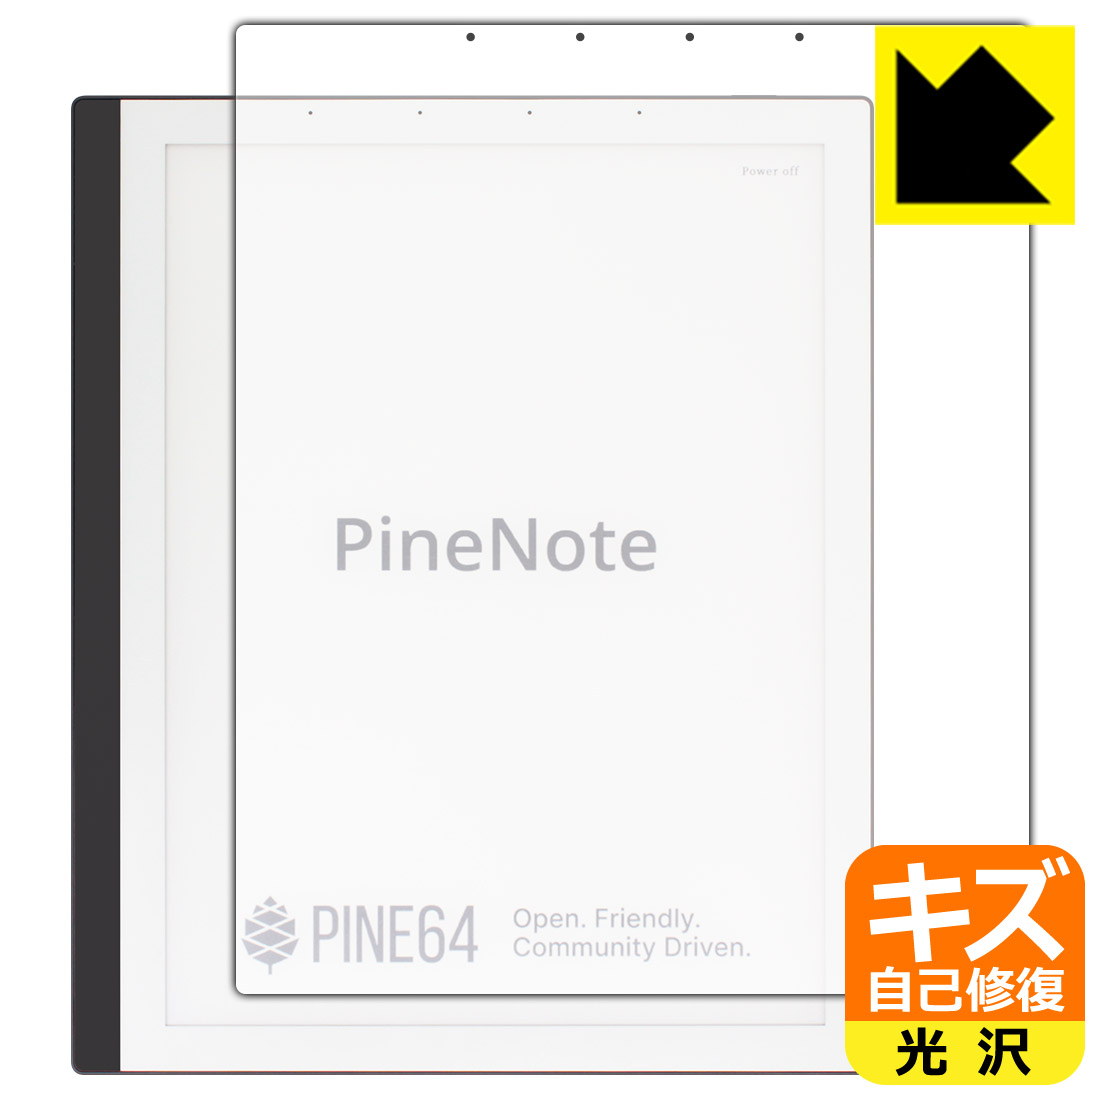 キズ自己修復保護フィルム PineNote Developer Edition 日本製 自社製造直販